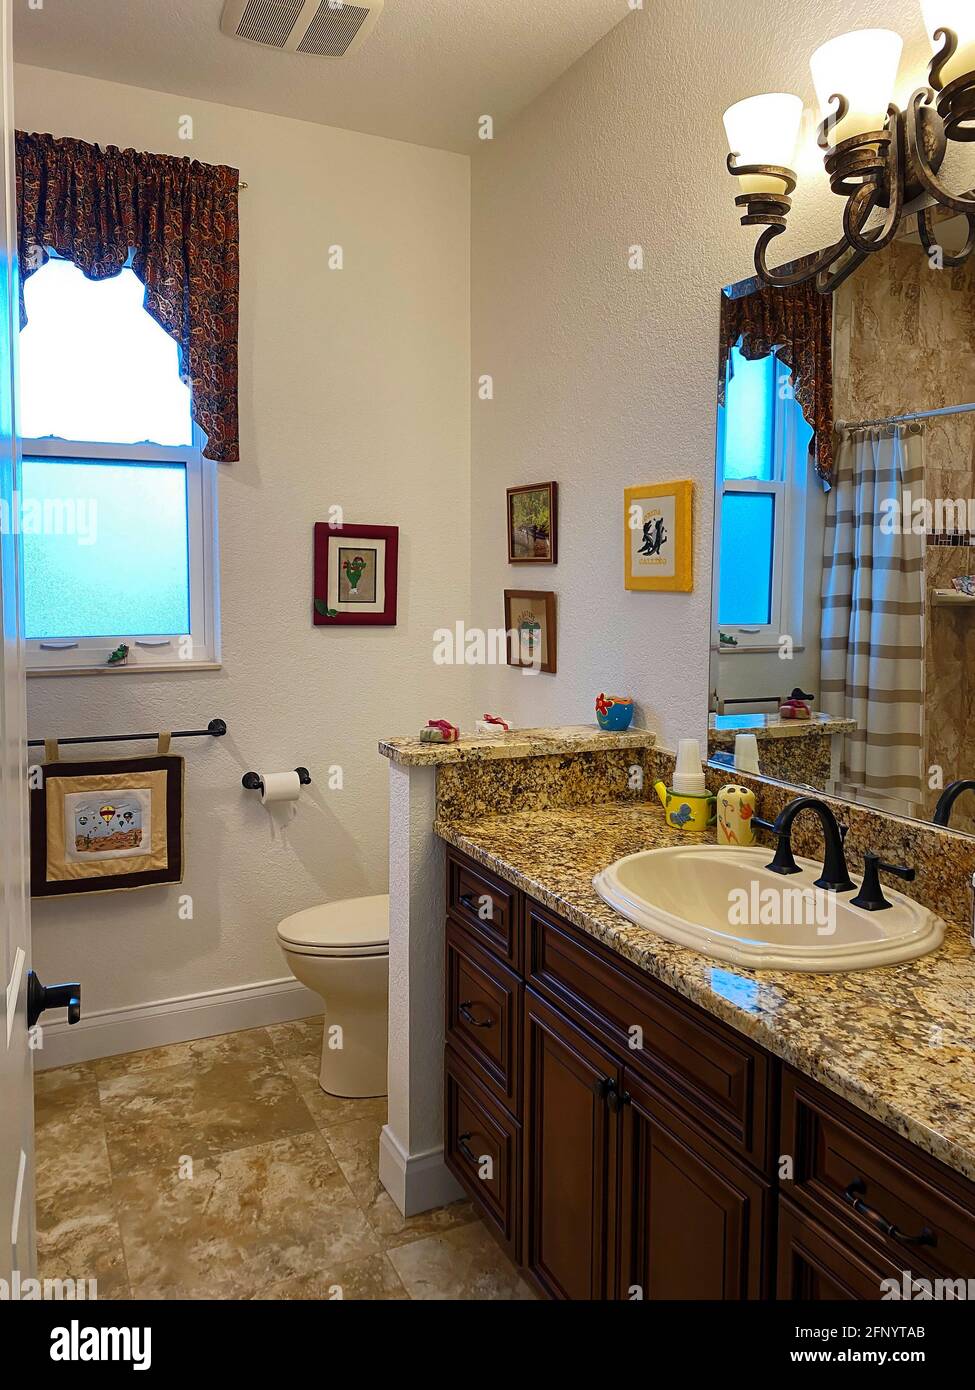 cuarto de baño moderno; encimera de granito; fregadero; accesorios de  bronce; área de aseo; ventana esmerilada; valance; decoraciones; piso de  azulejo; casa, PR Fotografía de stock - Alamy